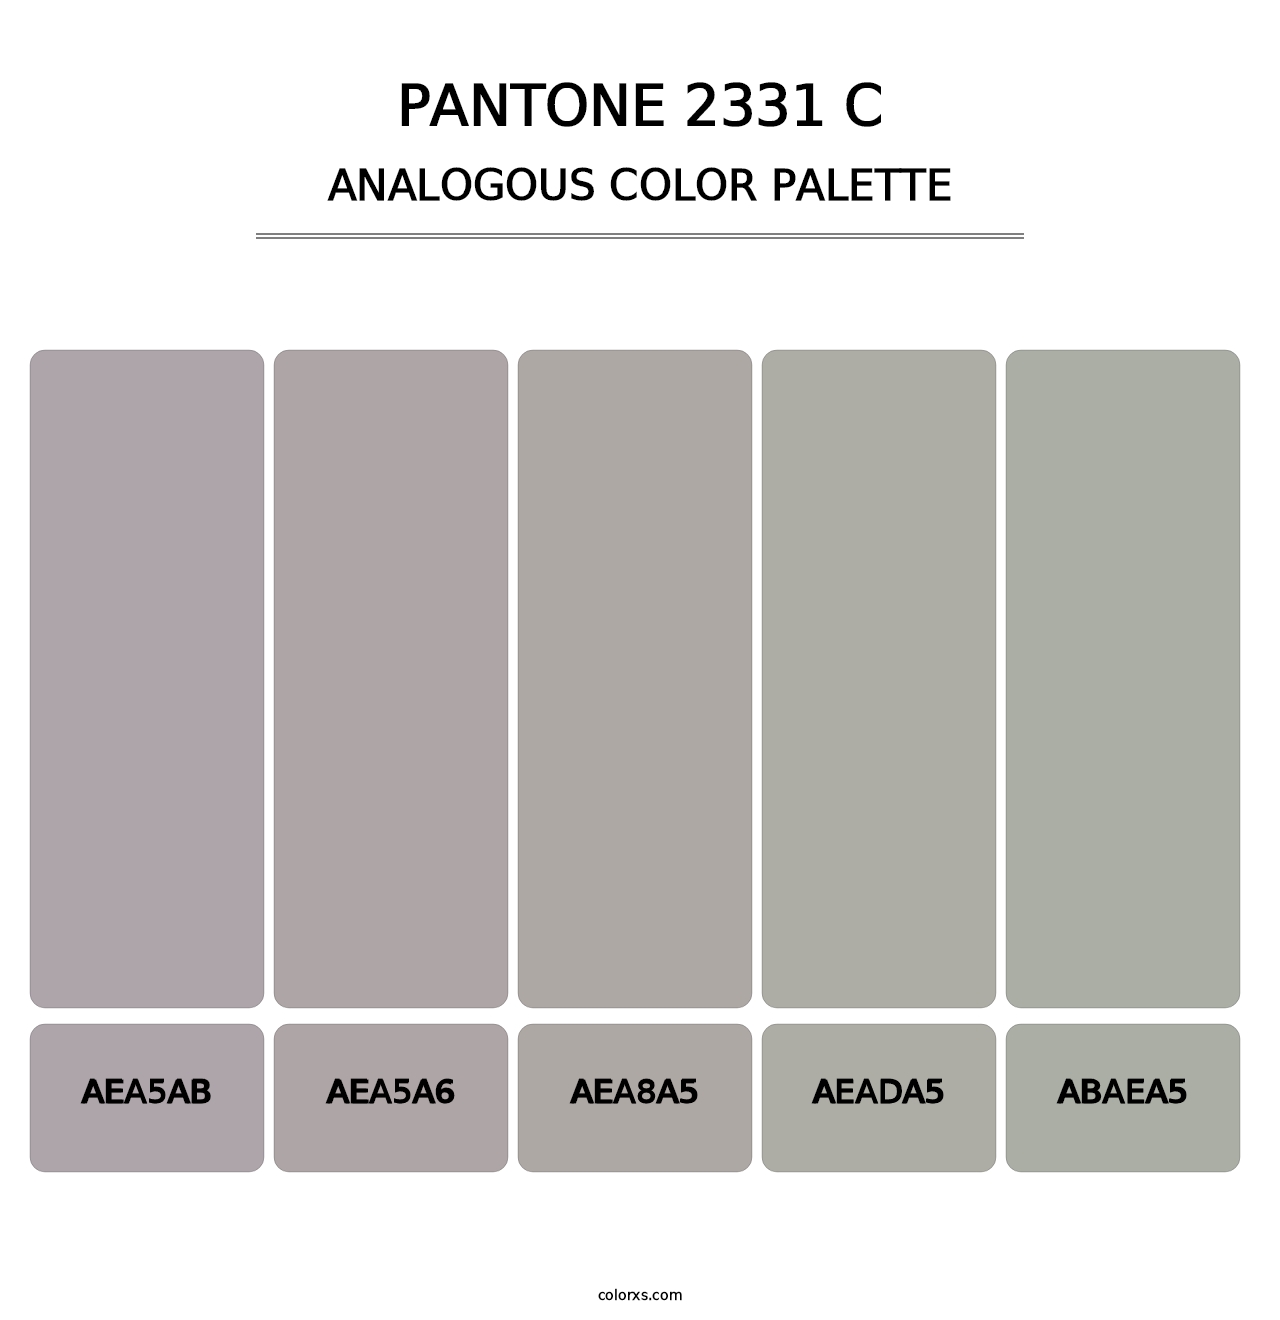 PANTONE 2331 C - Analogous Color Palette